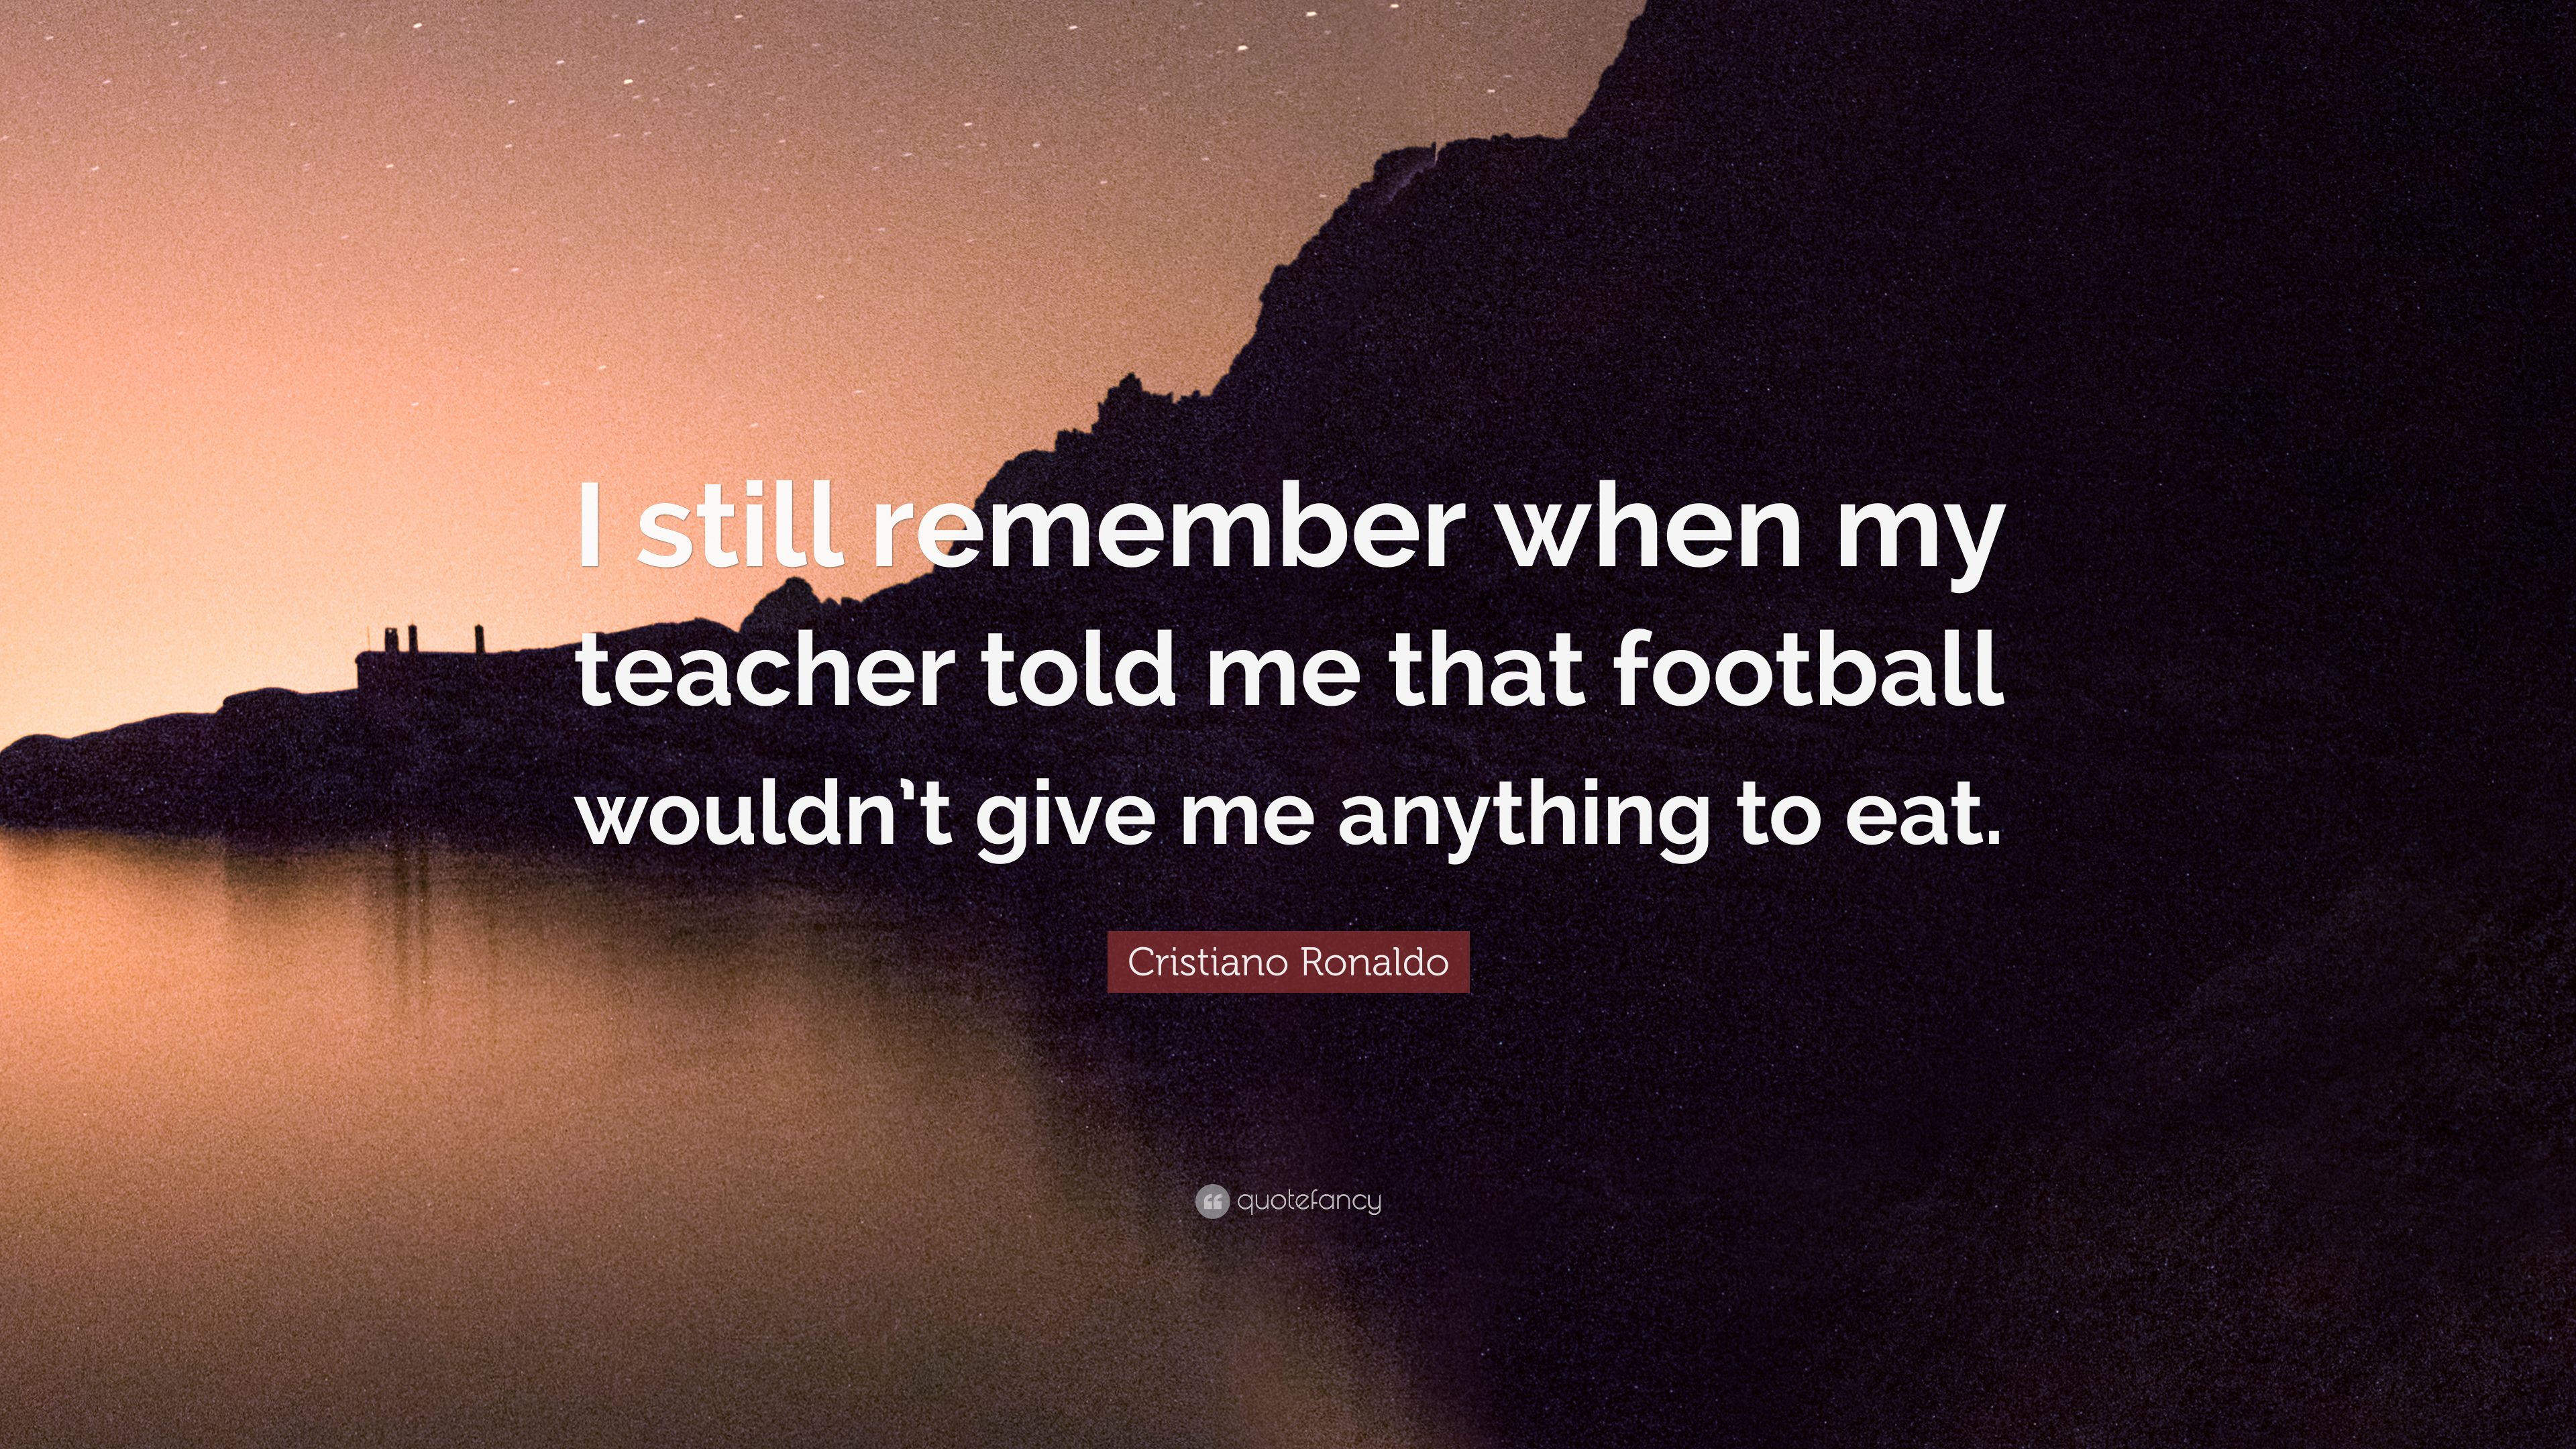 Cristiano Ronaldo Quote: “I still remember when my teacher told me